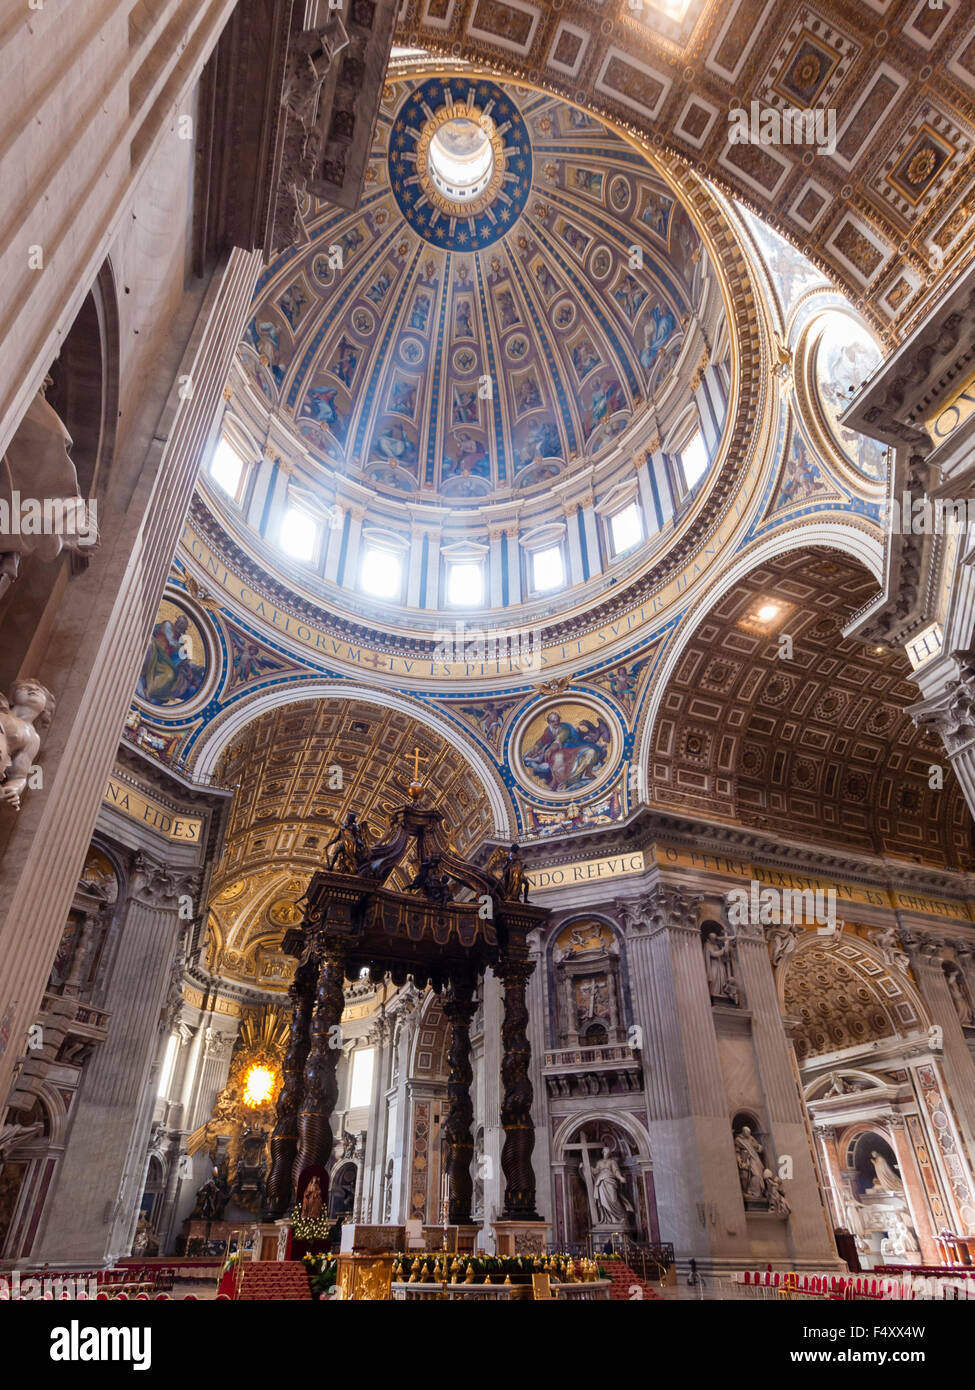 Interno della Basilica Papale di San Pietro Vaticano: coro con Bernini baldacchino altare sotto la cupola. Foto Stock